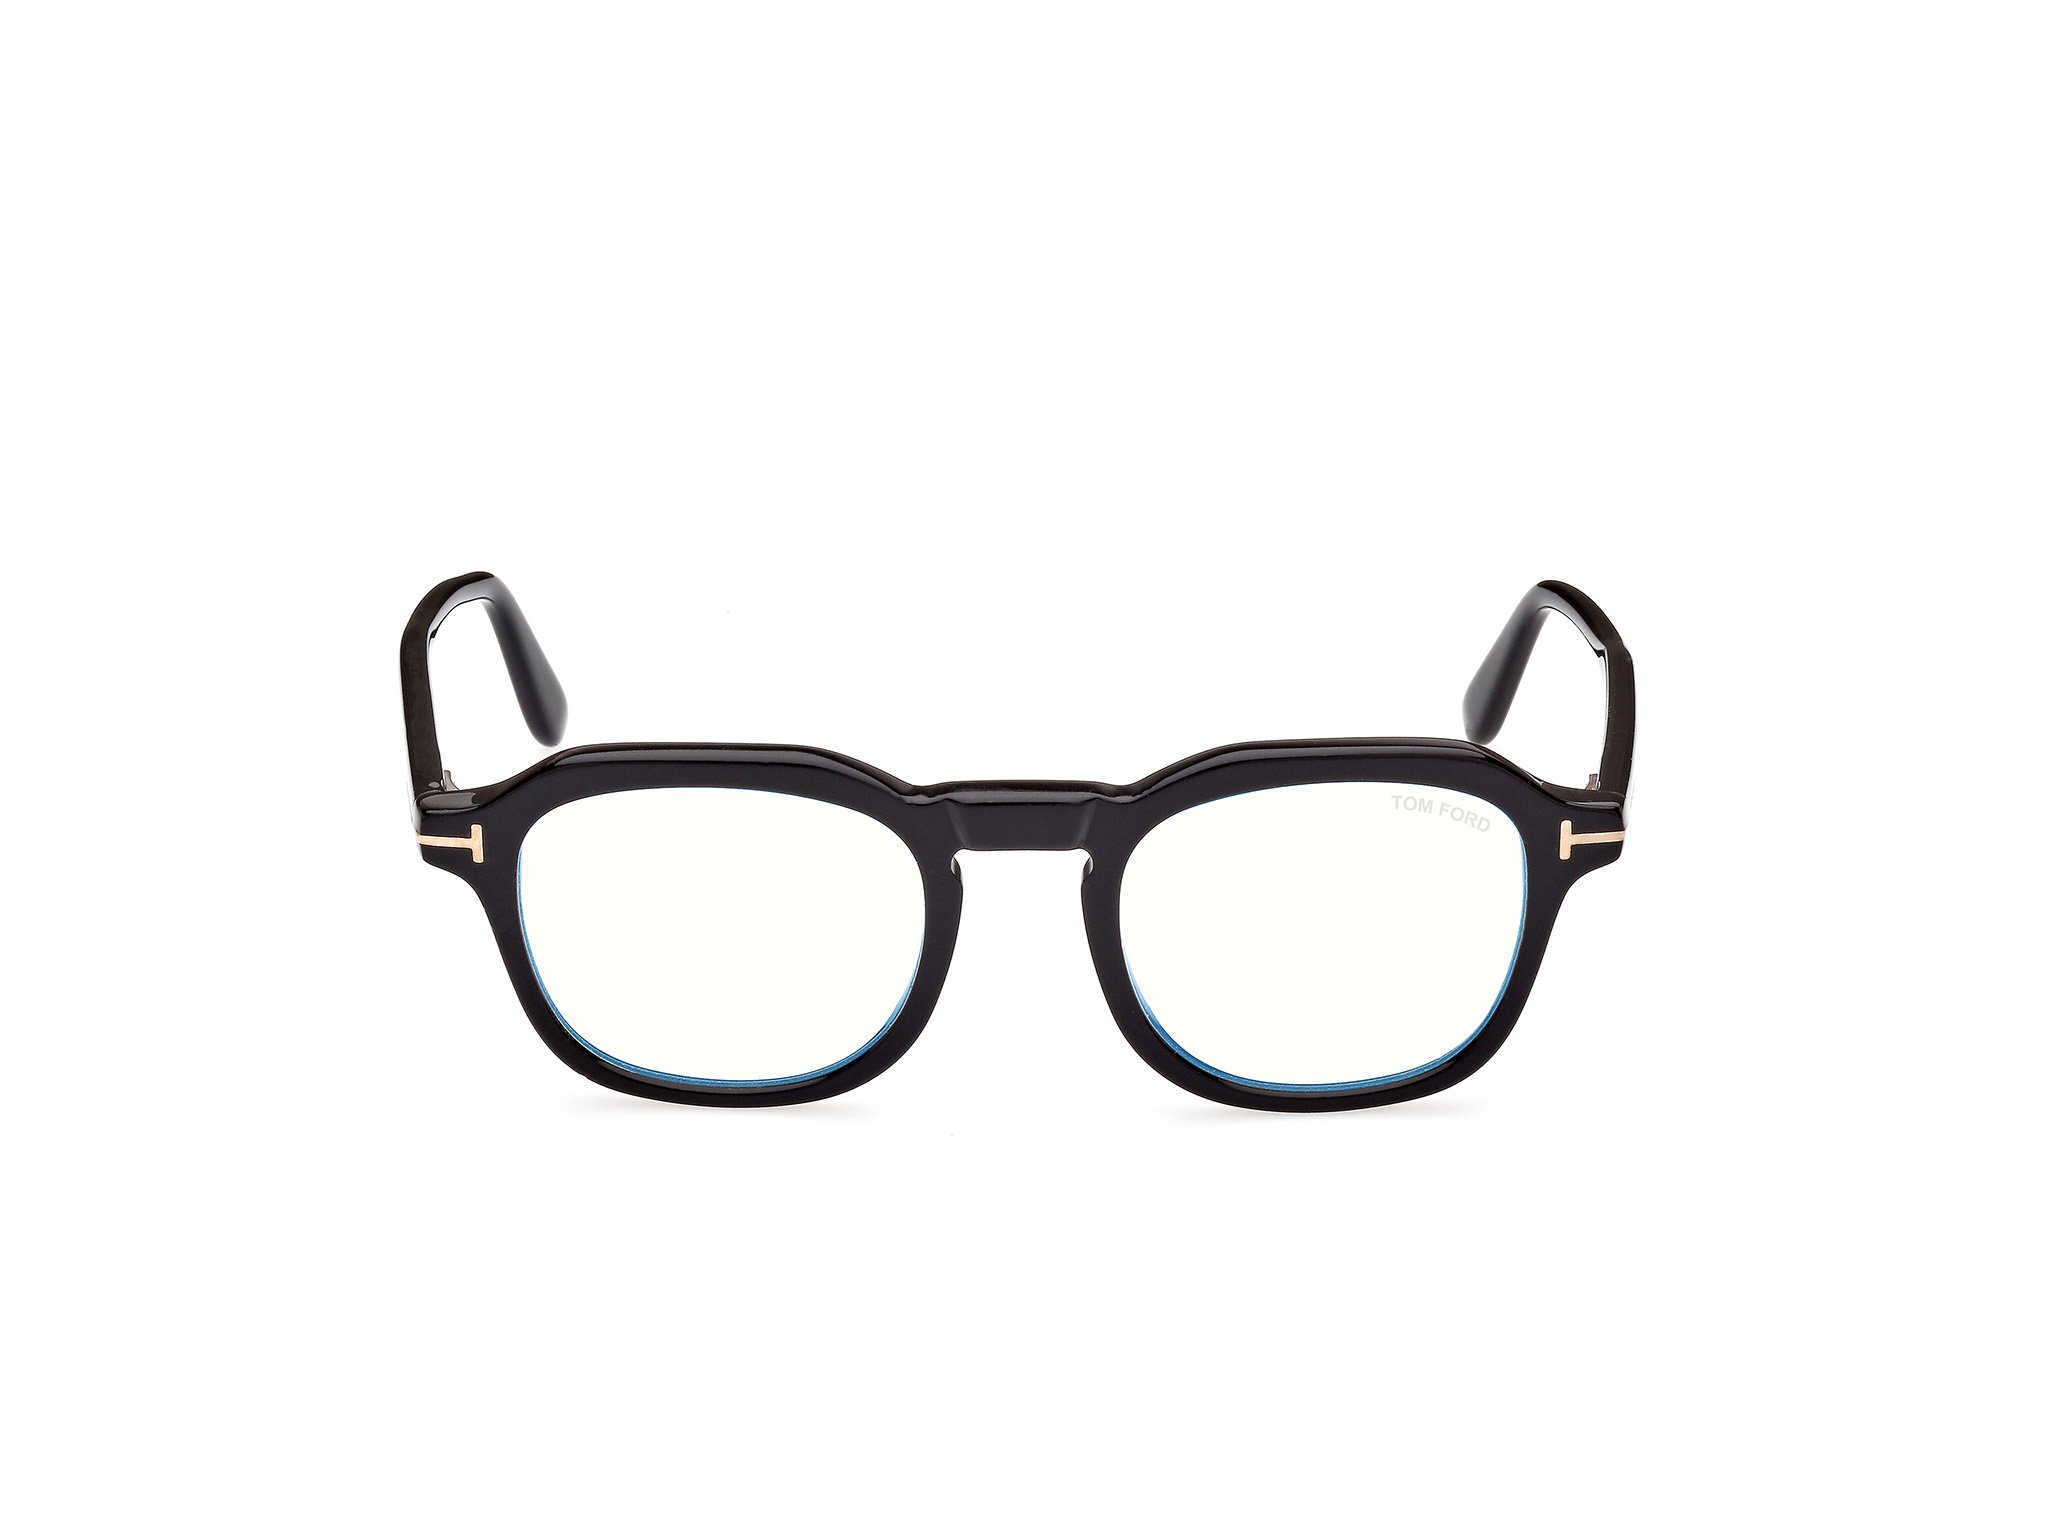 Das Bild zeigt die Korrektionsbrille FT5836-B 001 von der Marke Tom Ford in schwarz.